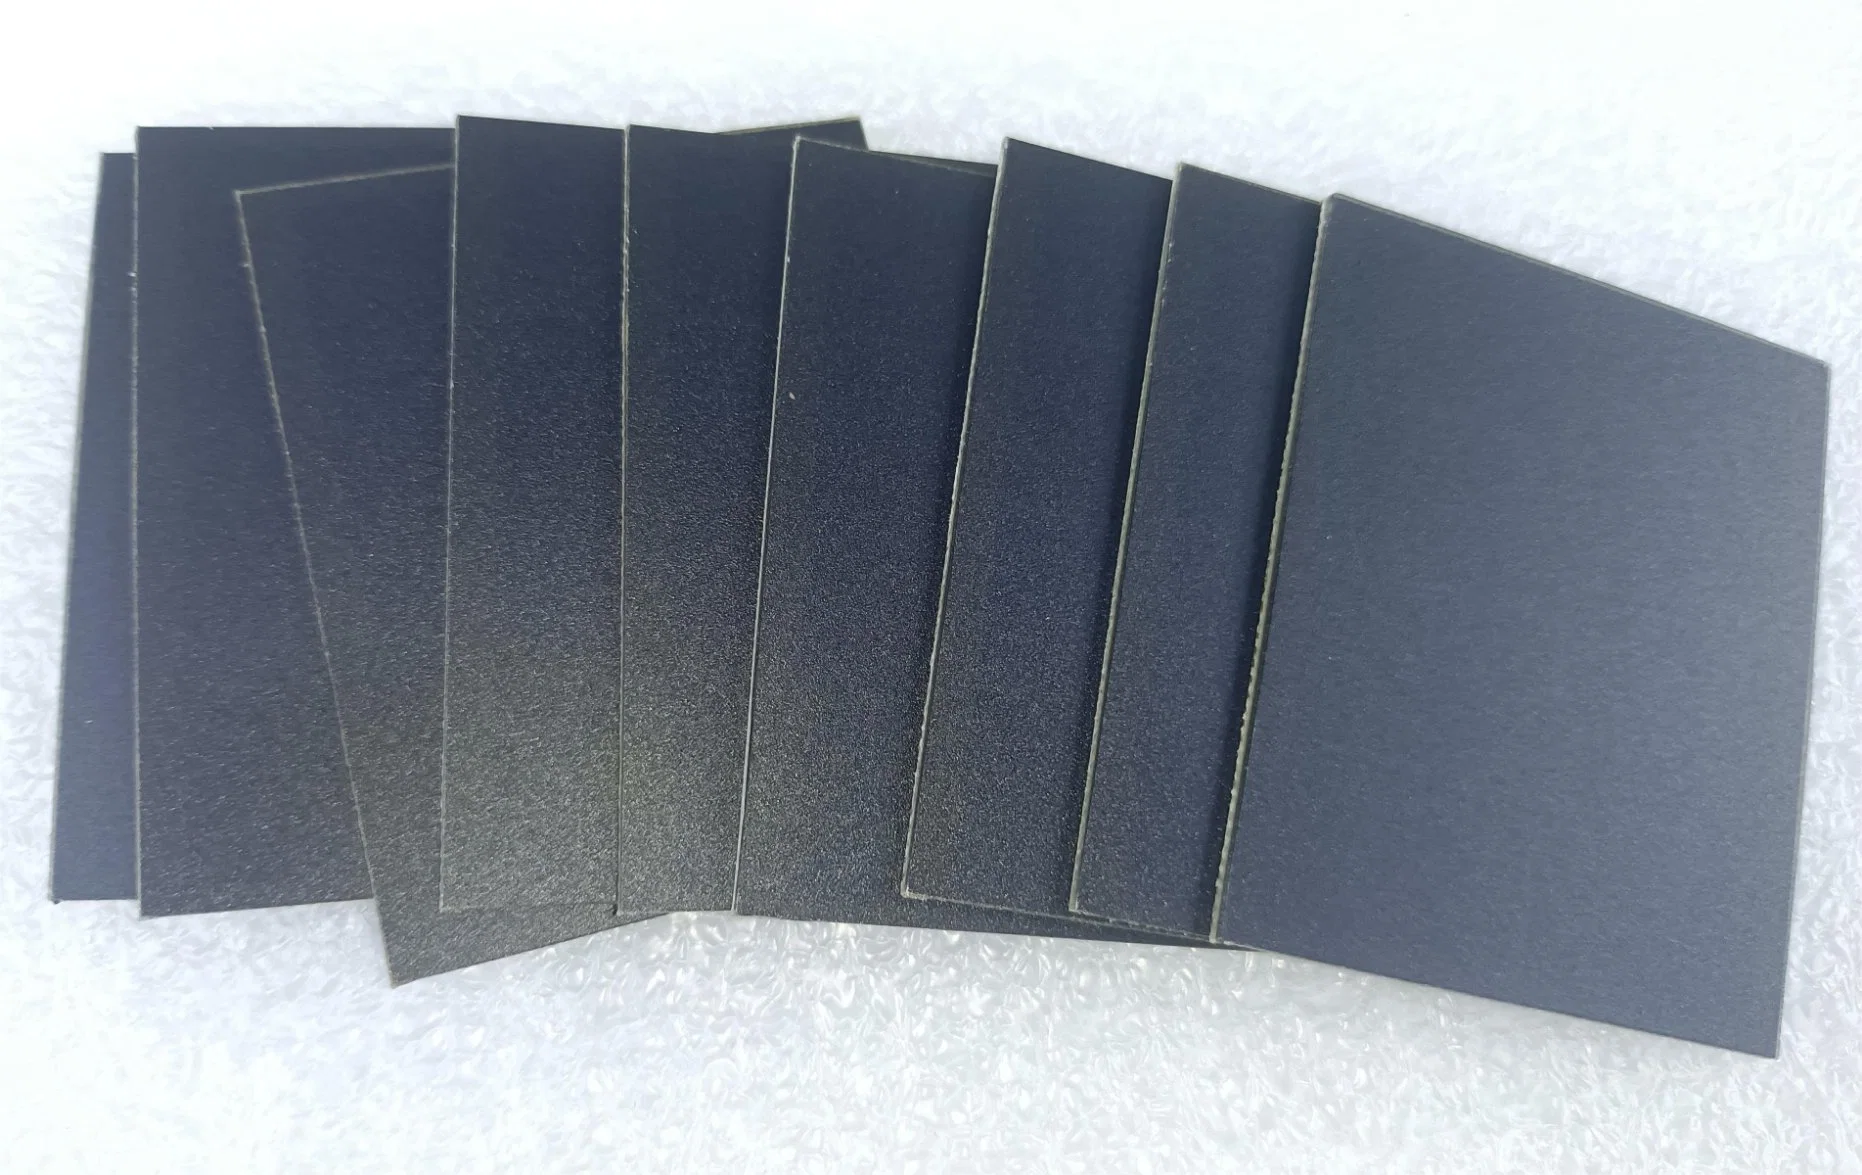 Mini-Thin Film de ETFE, congelando, superfície de vidro preto PV Powered 1-12Módulo W 2-12V Formatos Personalizados pequeno painel solar - Alta Eficiência de silício mono de células fotovoltaicas